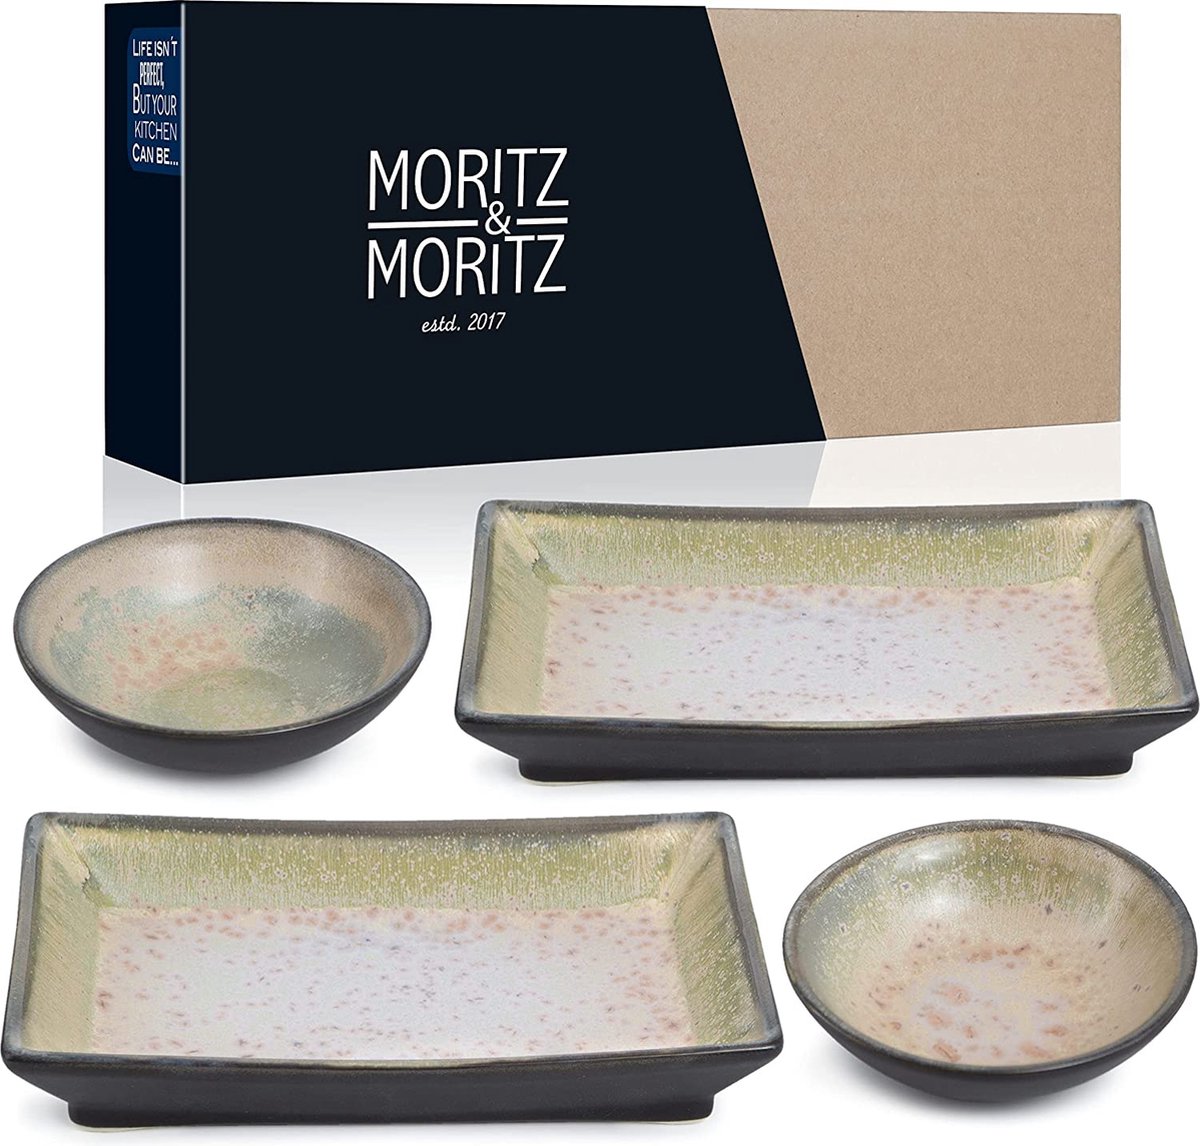 Moritz & Moritz Sushi serviesset voor 2 personen, sushi-serveerset met 2 x sushi-borden en 2 x sushi-dip-schaaltjes, paars-groen met reactief glazuur